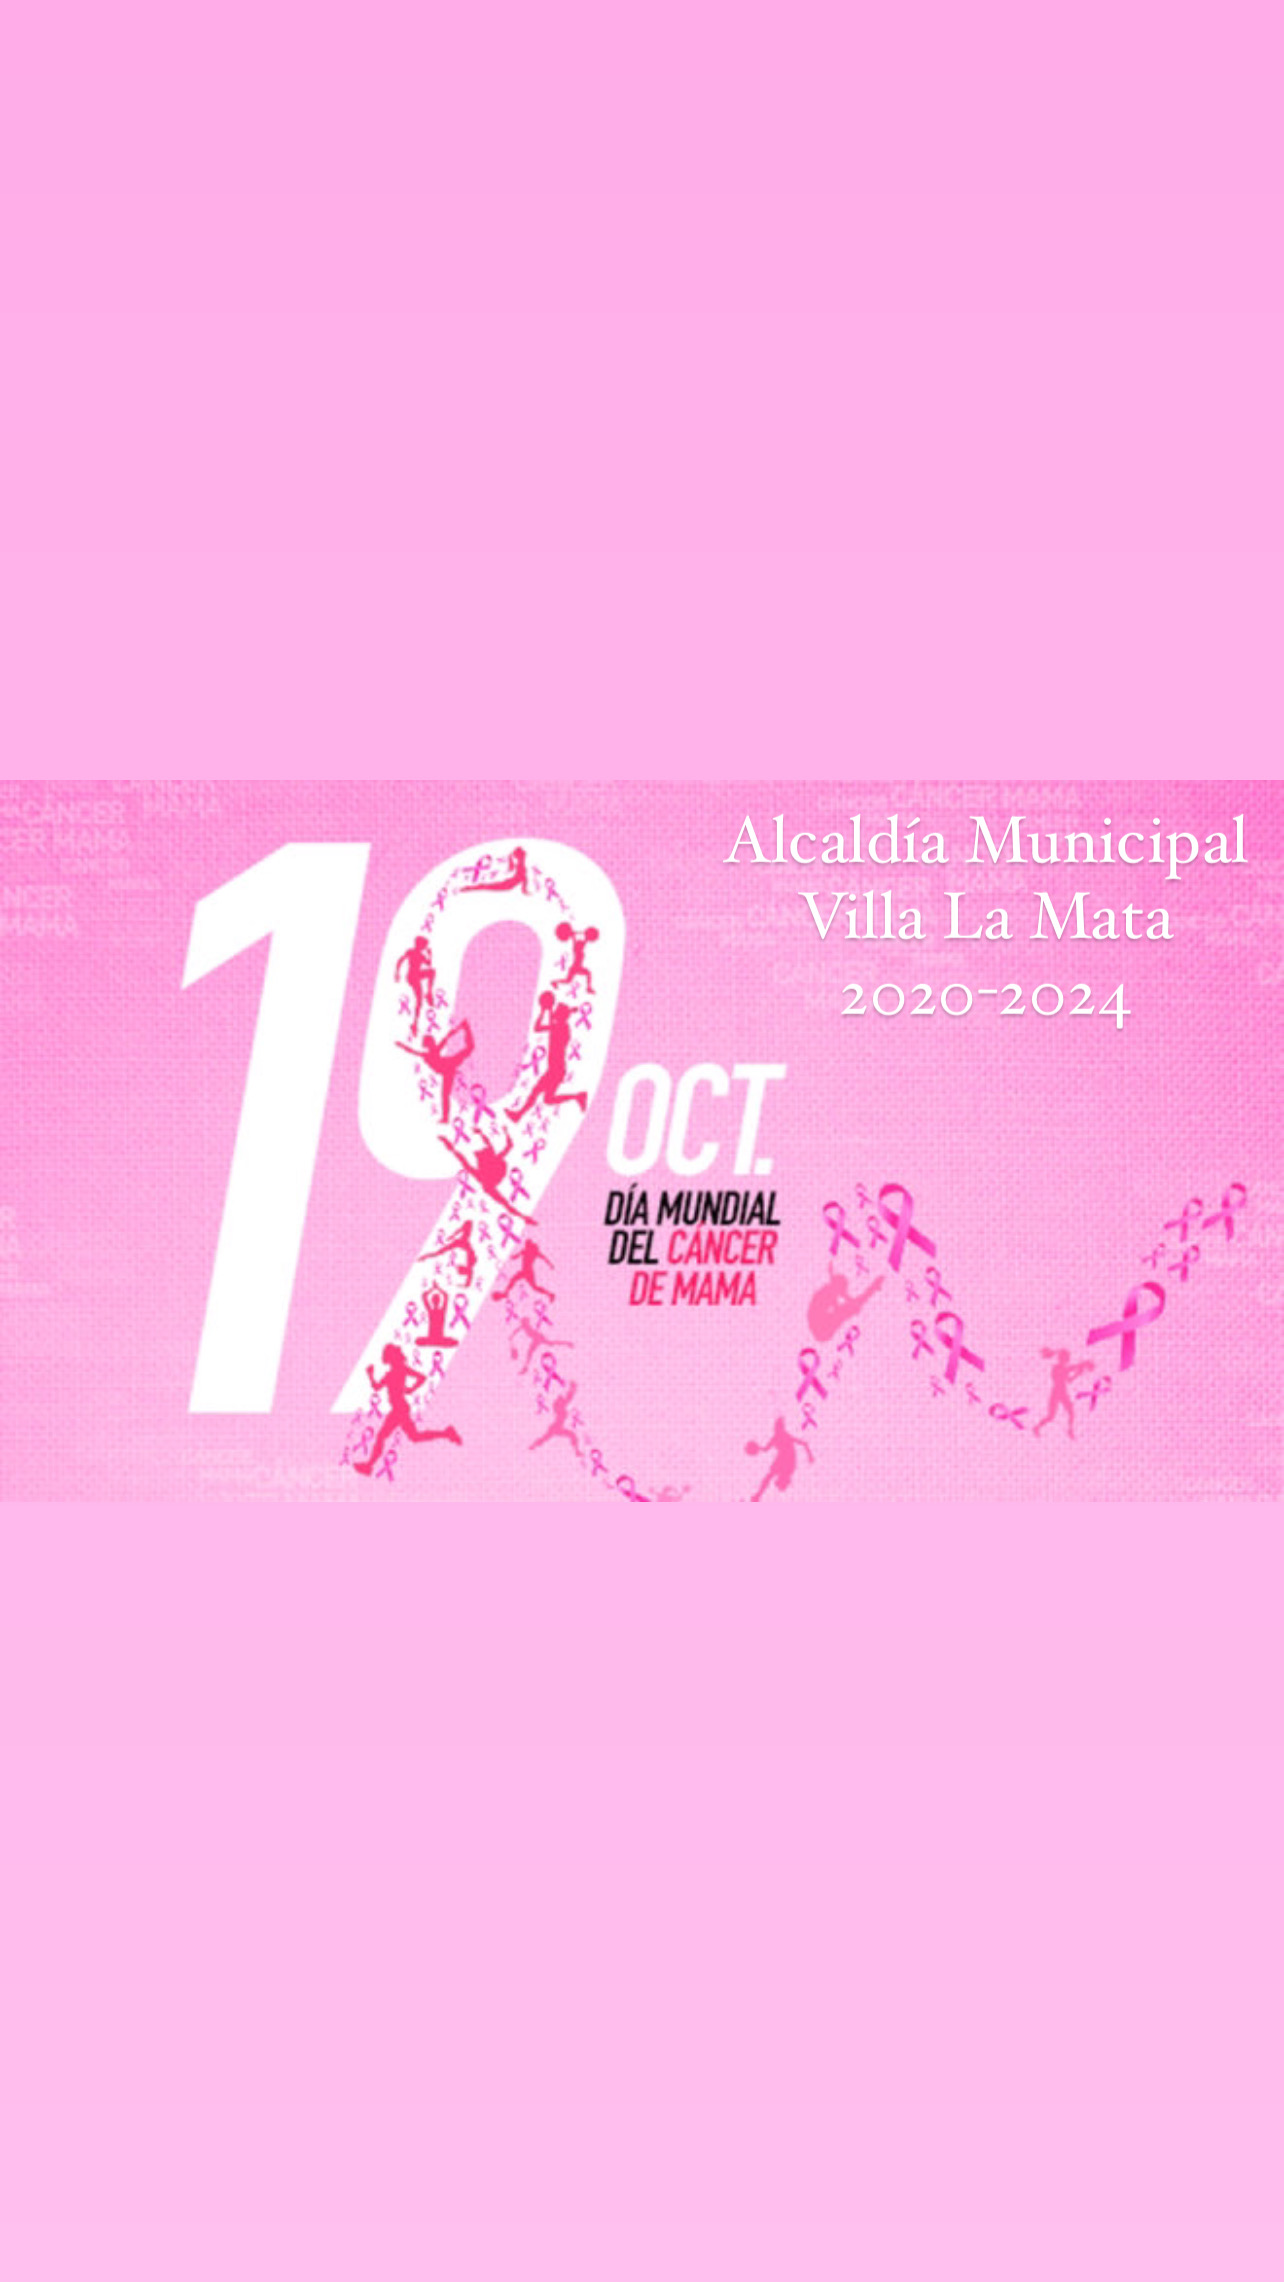 “Día Mundial de lucha contra el cáncer de mama”